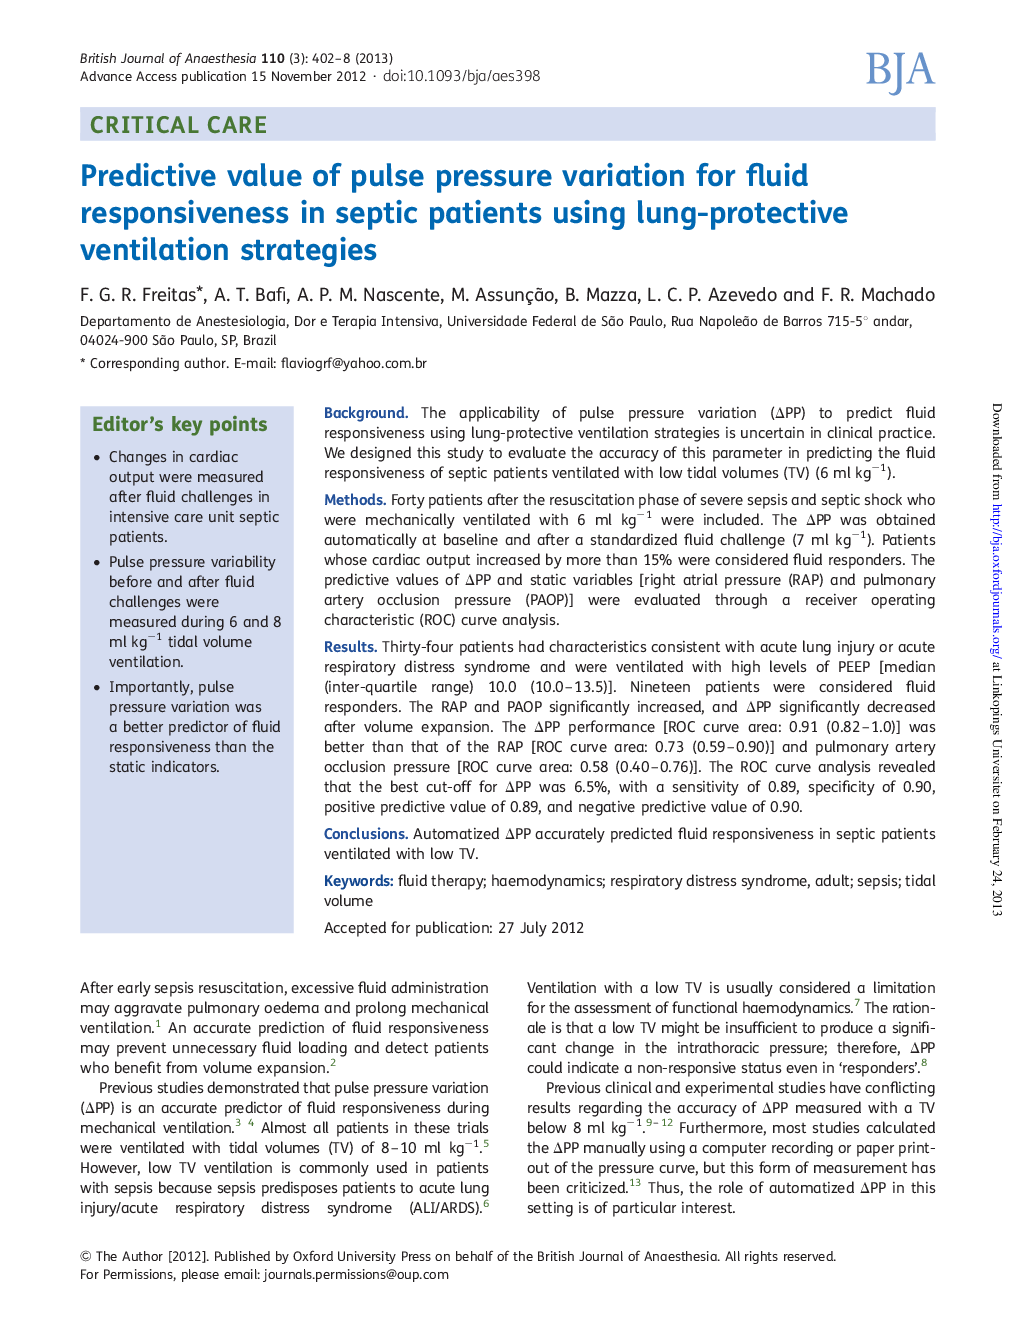 ارزش پیش بینی کننده تغییرات فشار پالس برای واکنش مایع در بیماران سپتیک با استفاده از استراتژی تهویه ریه 